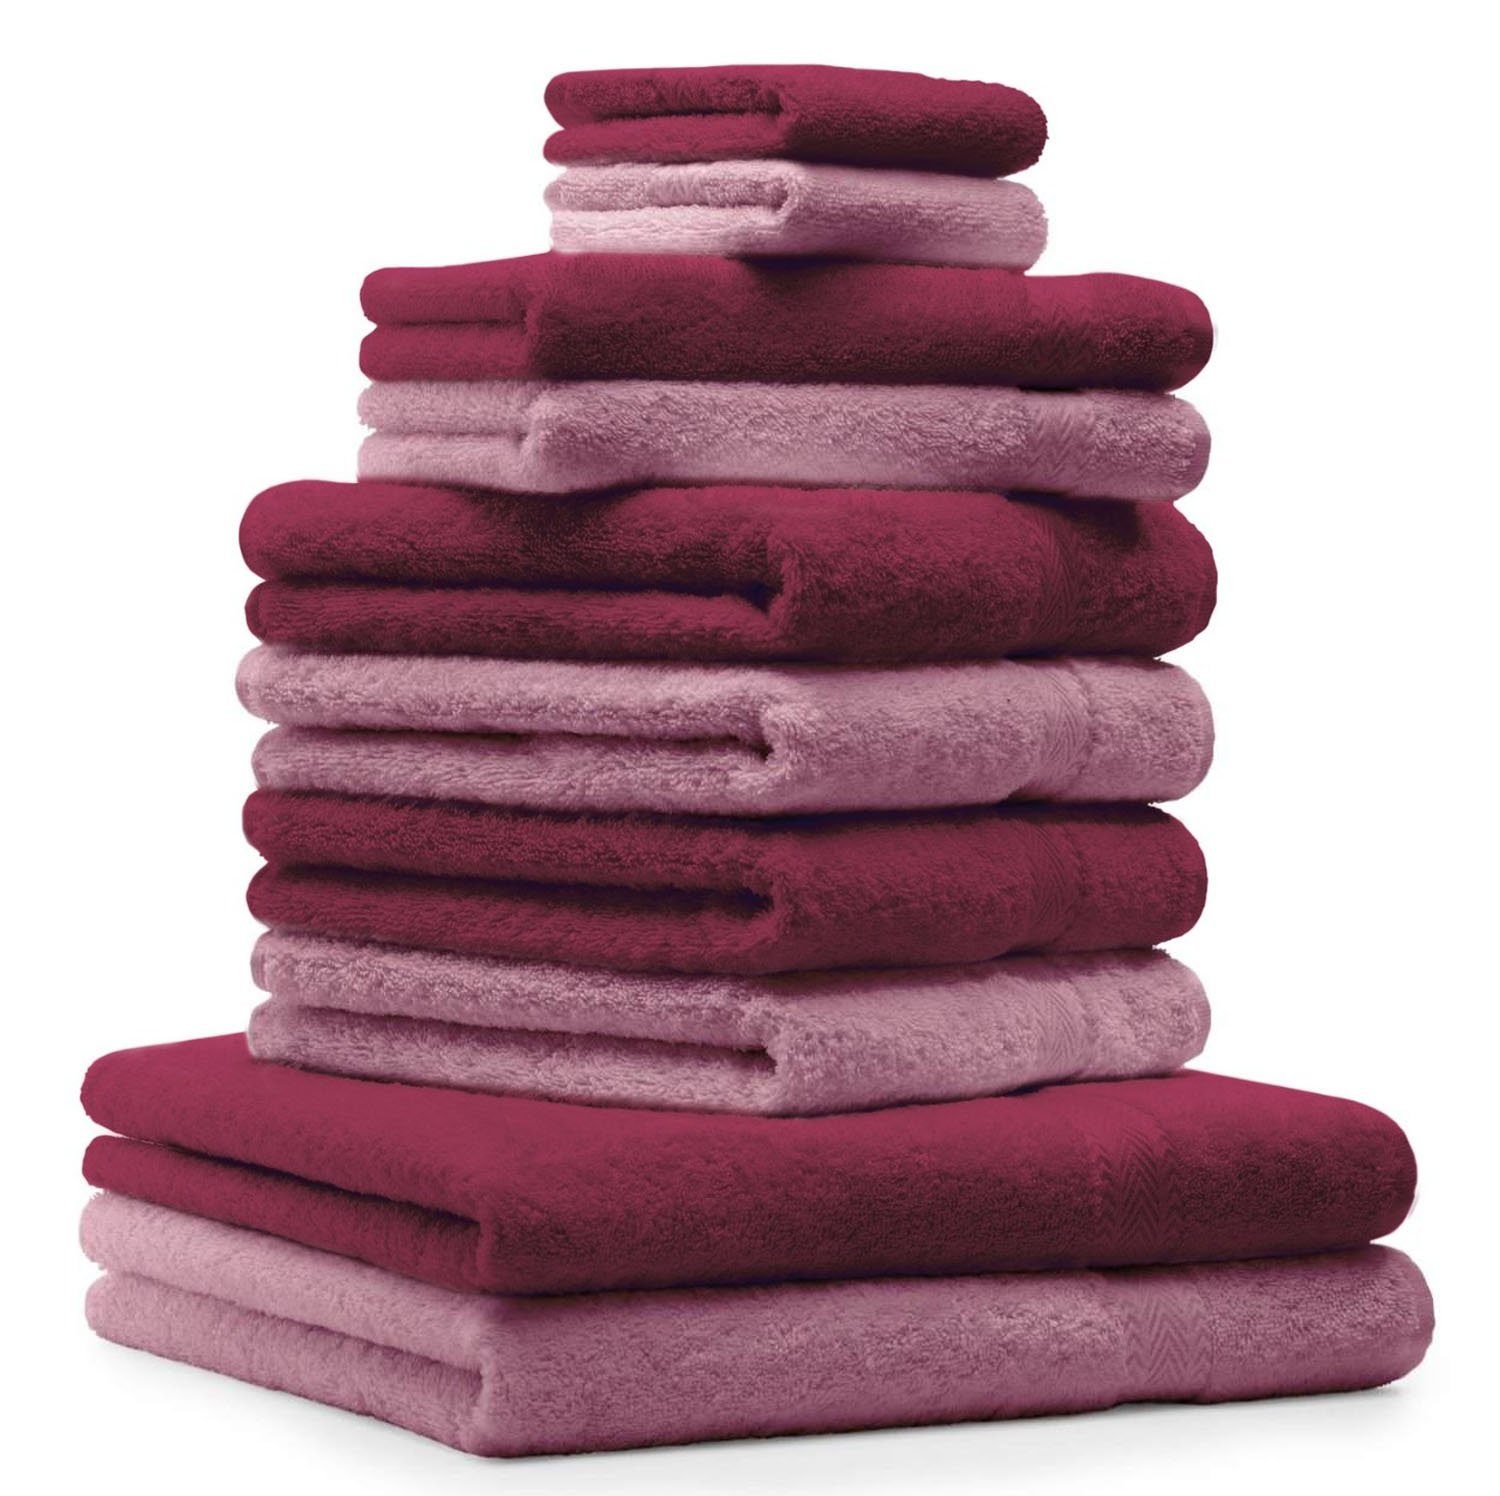 Betz Handtuch Handtuch-Set (10-tlg) Premium Dunkelrot, Baumwolle, & 100% Altrosa 10-TLG. Farbe Set